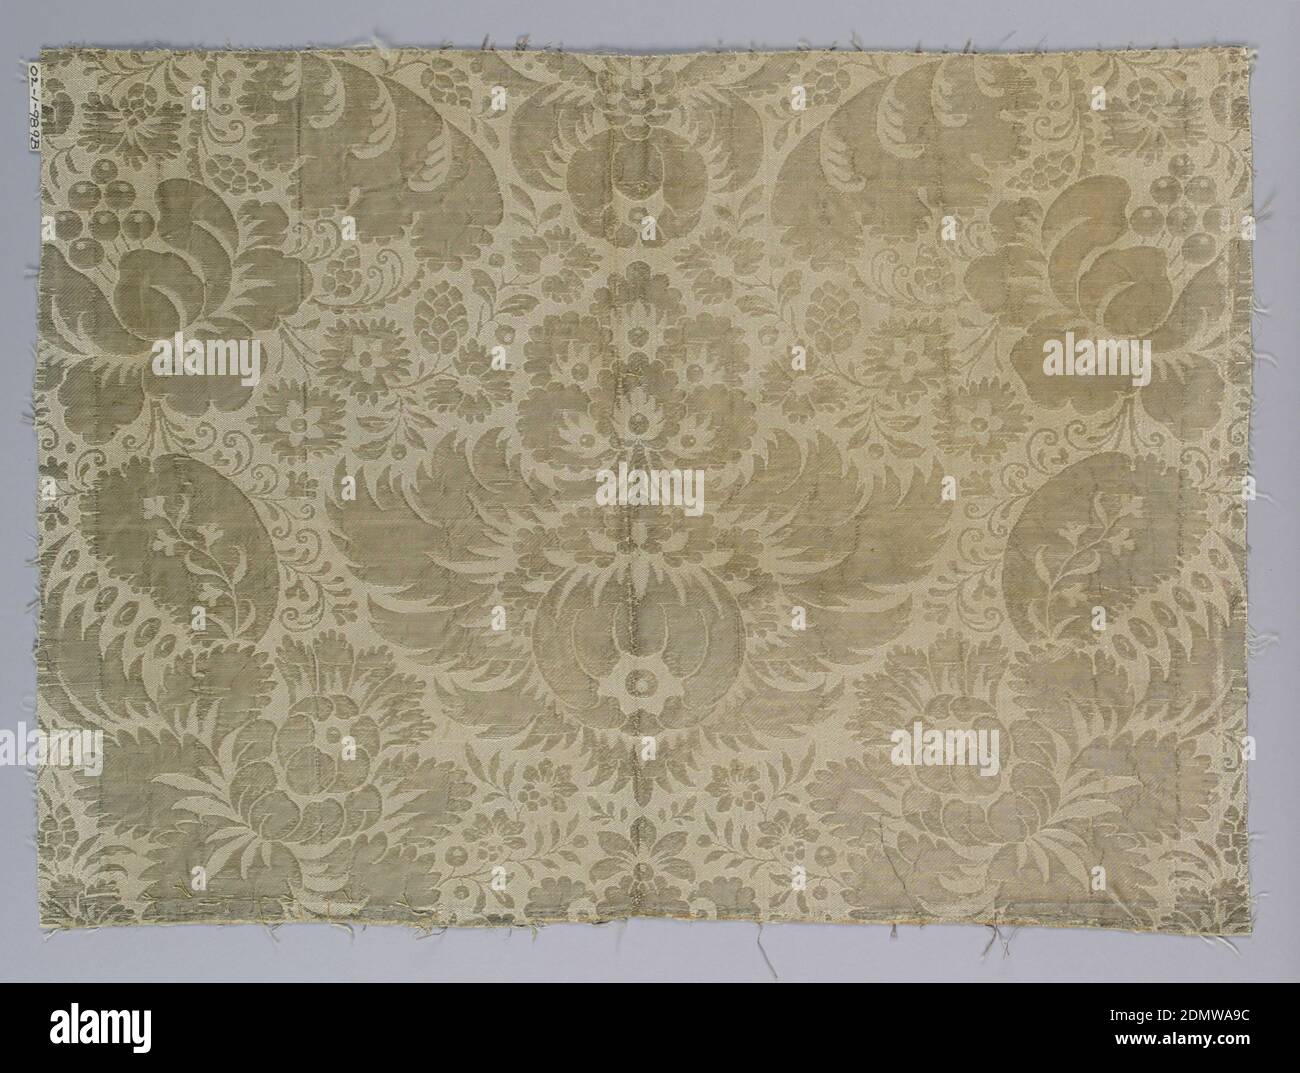 Frammenti, medium: Seta, tecnica metallica: Tessuto, motivo floreale simmetrico in argento e bianco., XVIII secolo, tessuti tessuti, frammenti Foto Stock